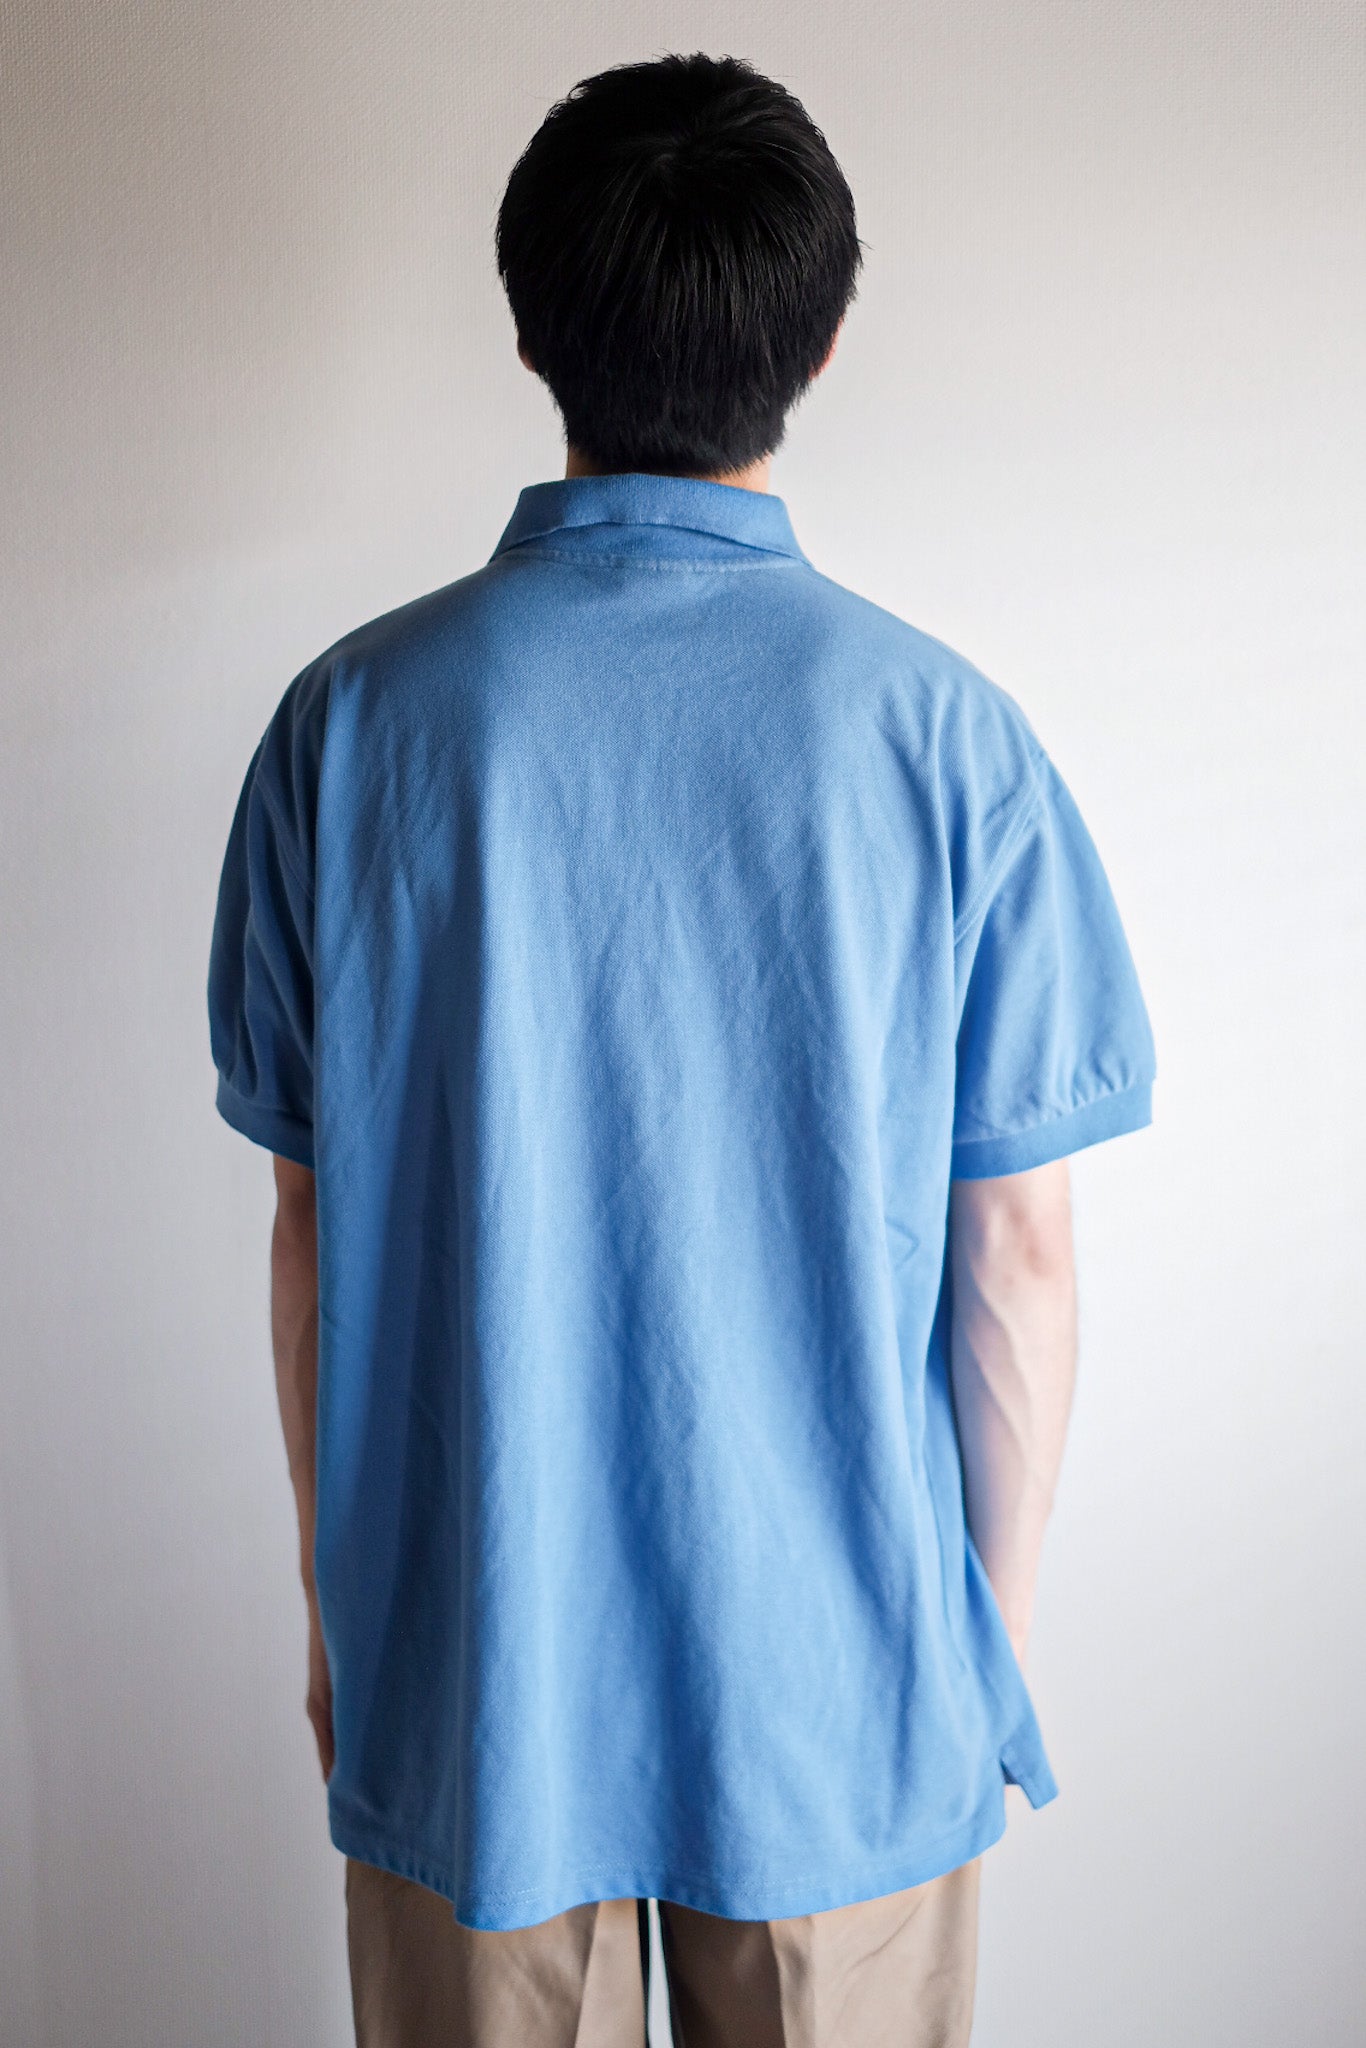 [~ 90 년대] Chemise Lacoste S/S 폴로 셔츠 크기.